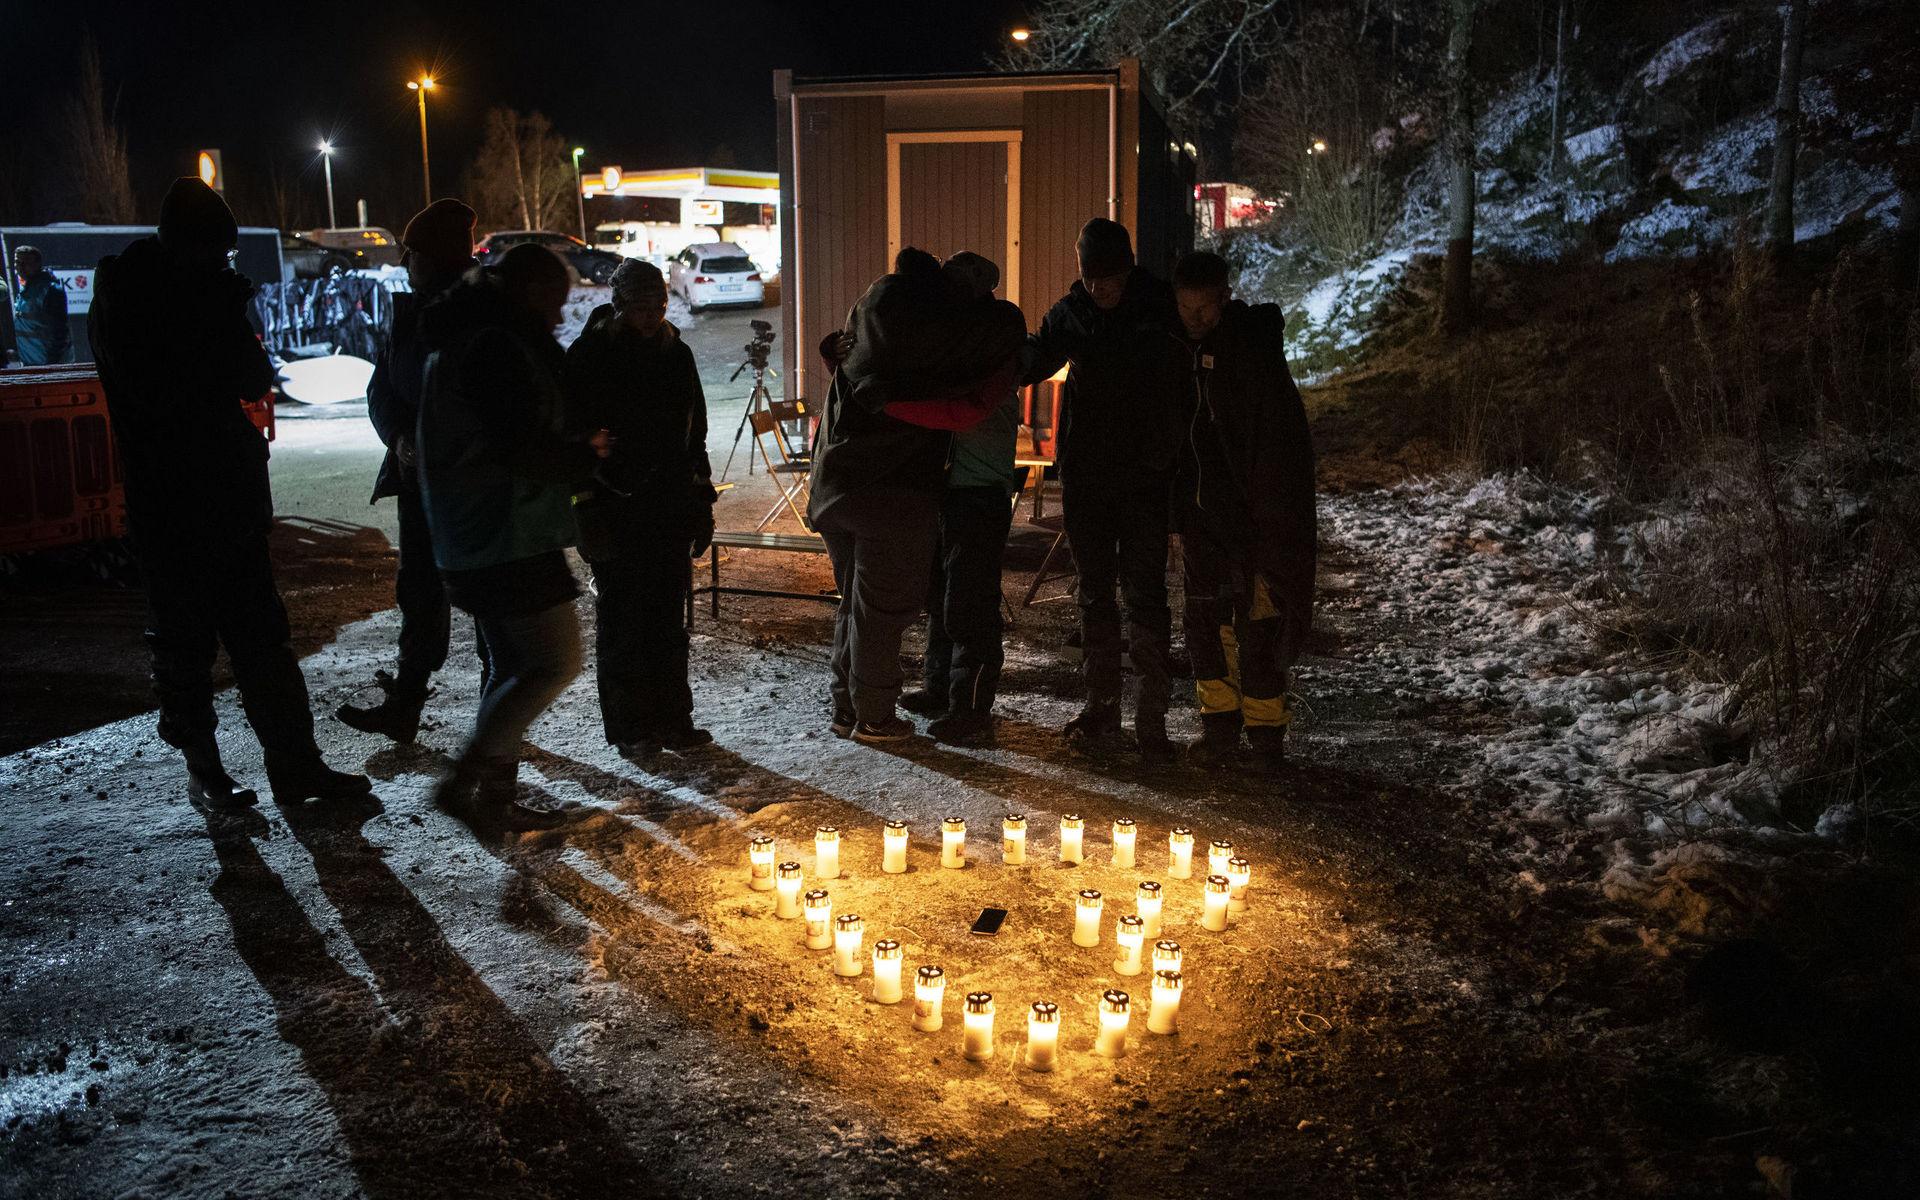 Invånare i Uddevalla chockades av beskedet att Wilma Andersson var död. Här sörjer Linda Sandberg med flera volontärer från Fikk efter beskedet.